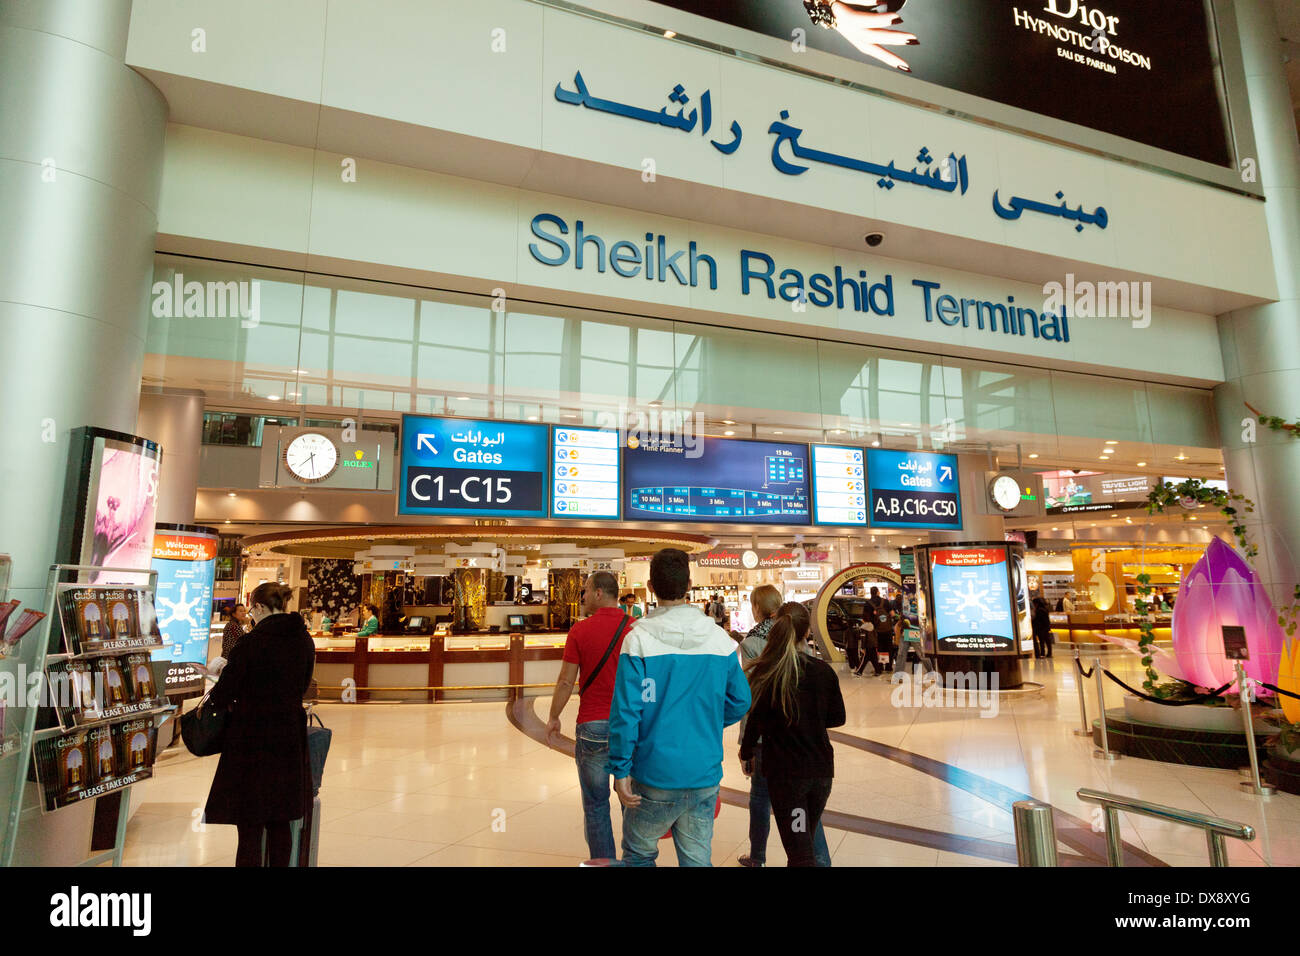 Der internationale Flughafen Dubai - Eingang zum Scheich Rashid Terminal, Dubai, VAE, Vereinigte Arabische Emirate, Naher Osten Stockfoto